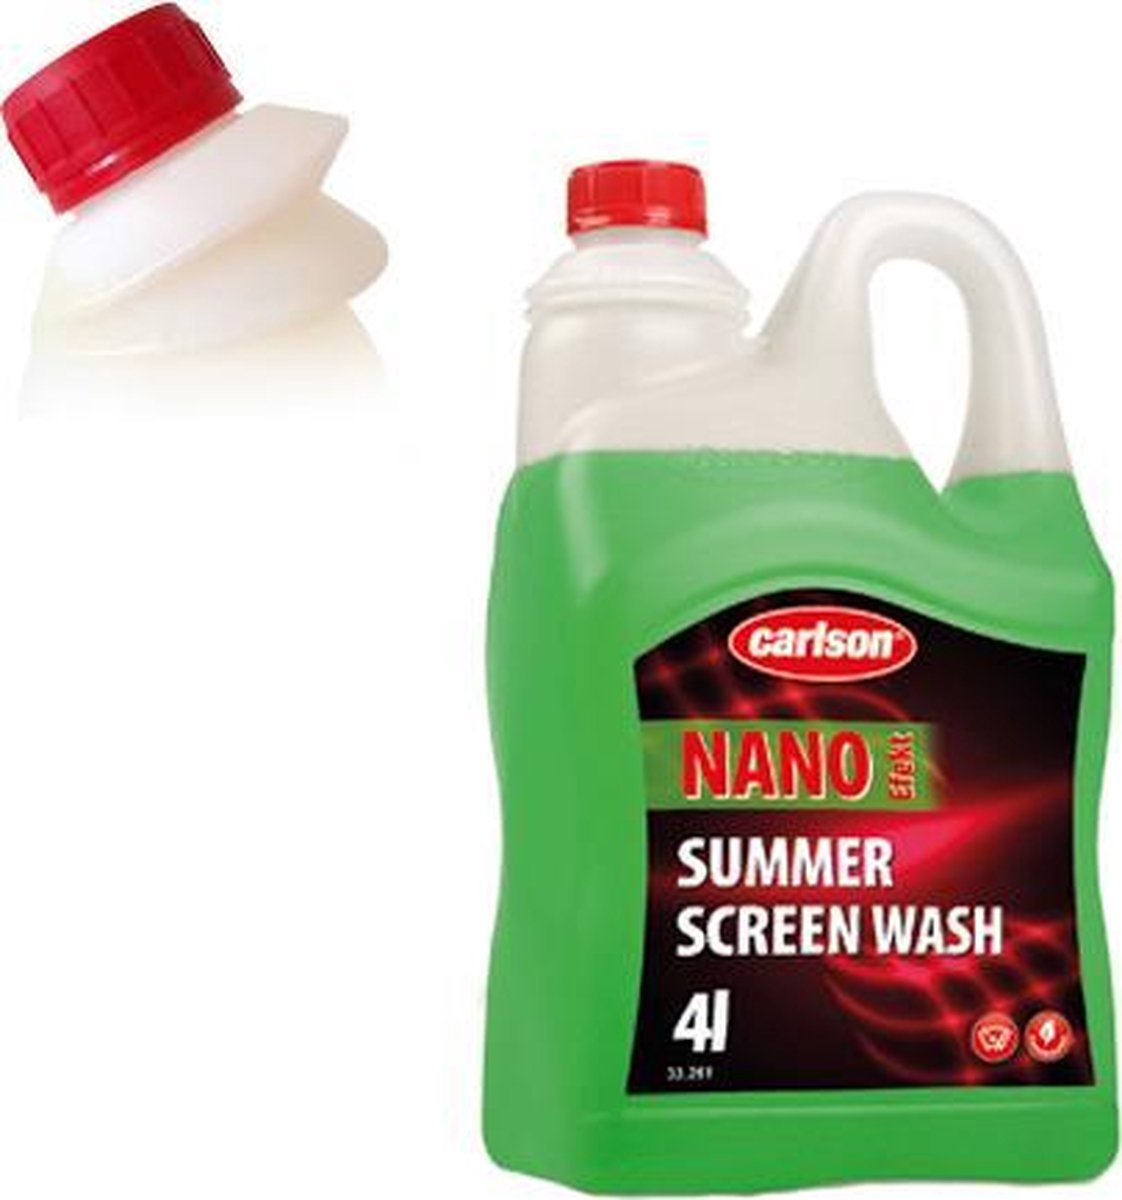 Carlson Summerscreen Nano 4 liter